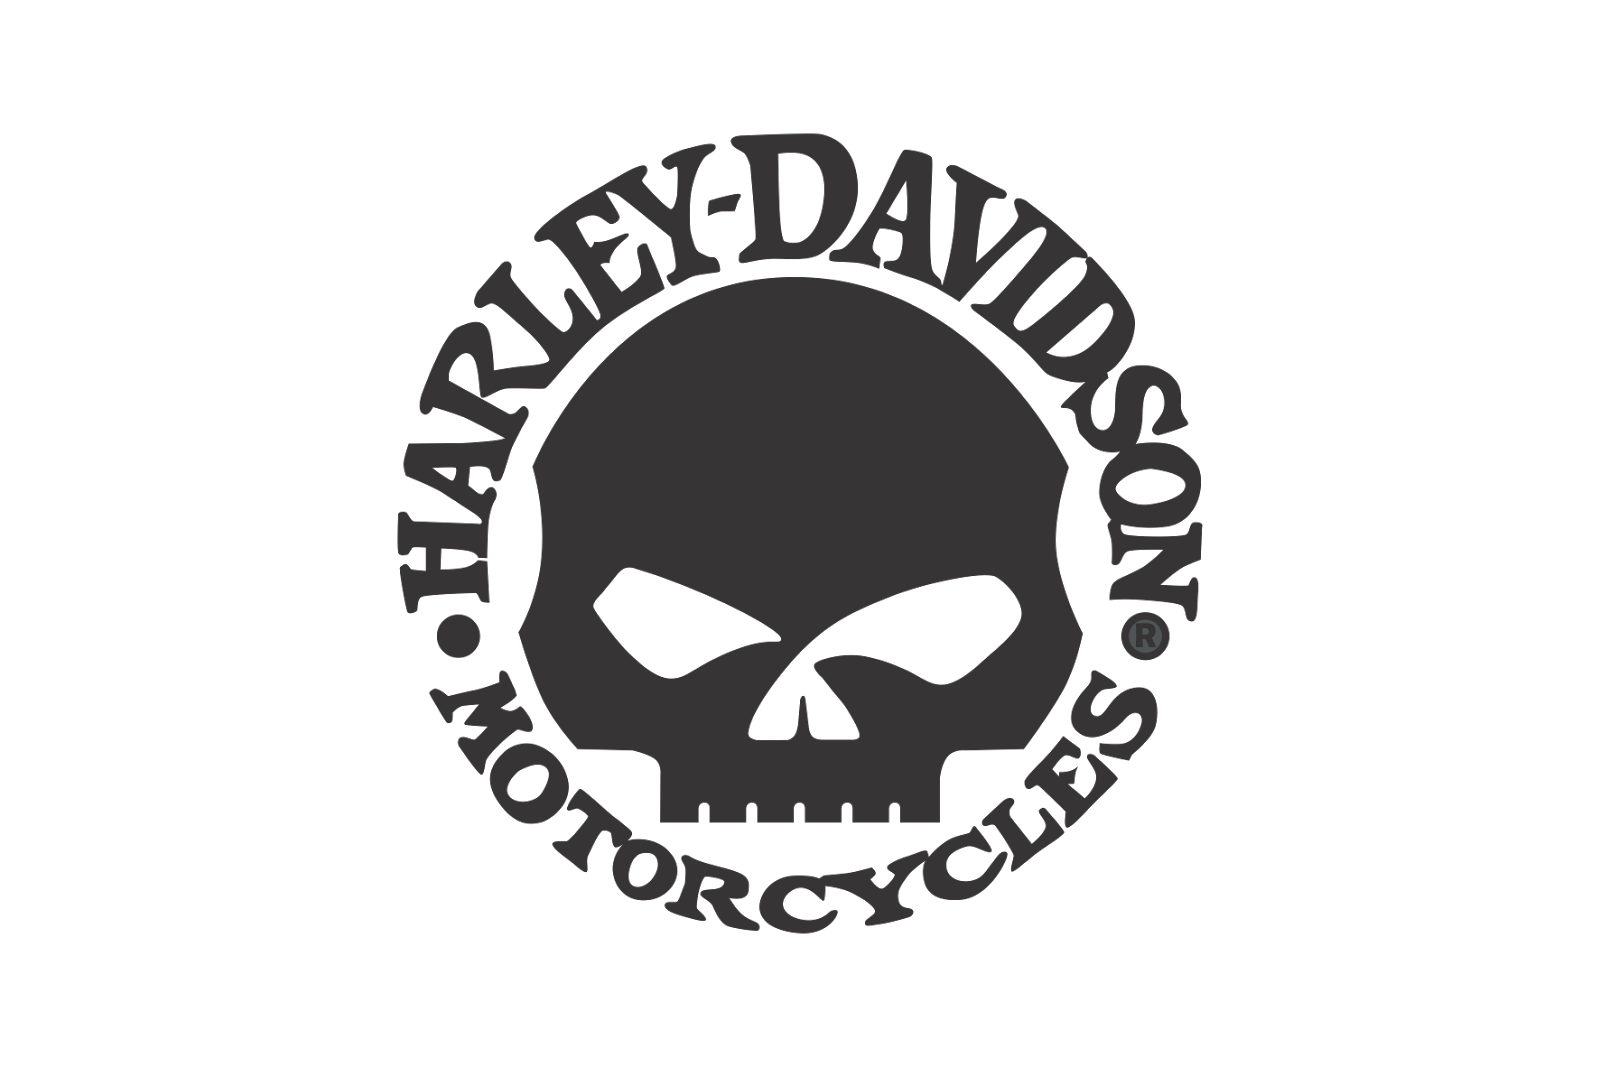 Logo Harley Skull Davidson PNG